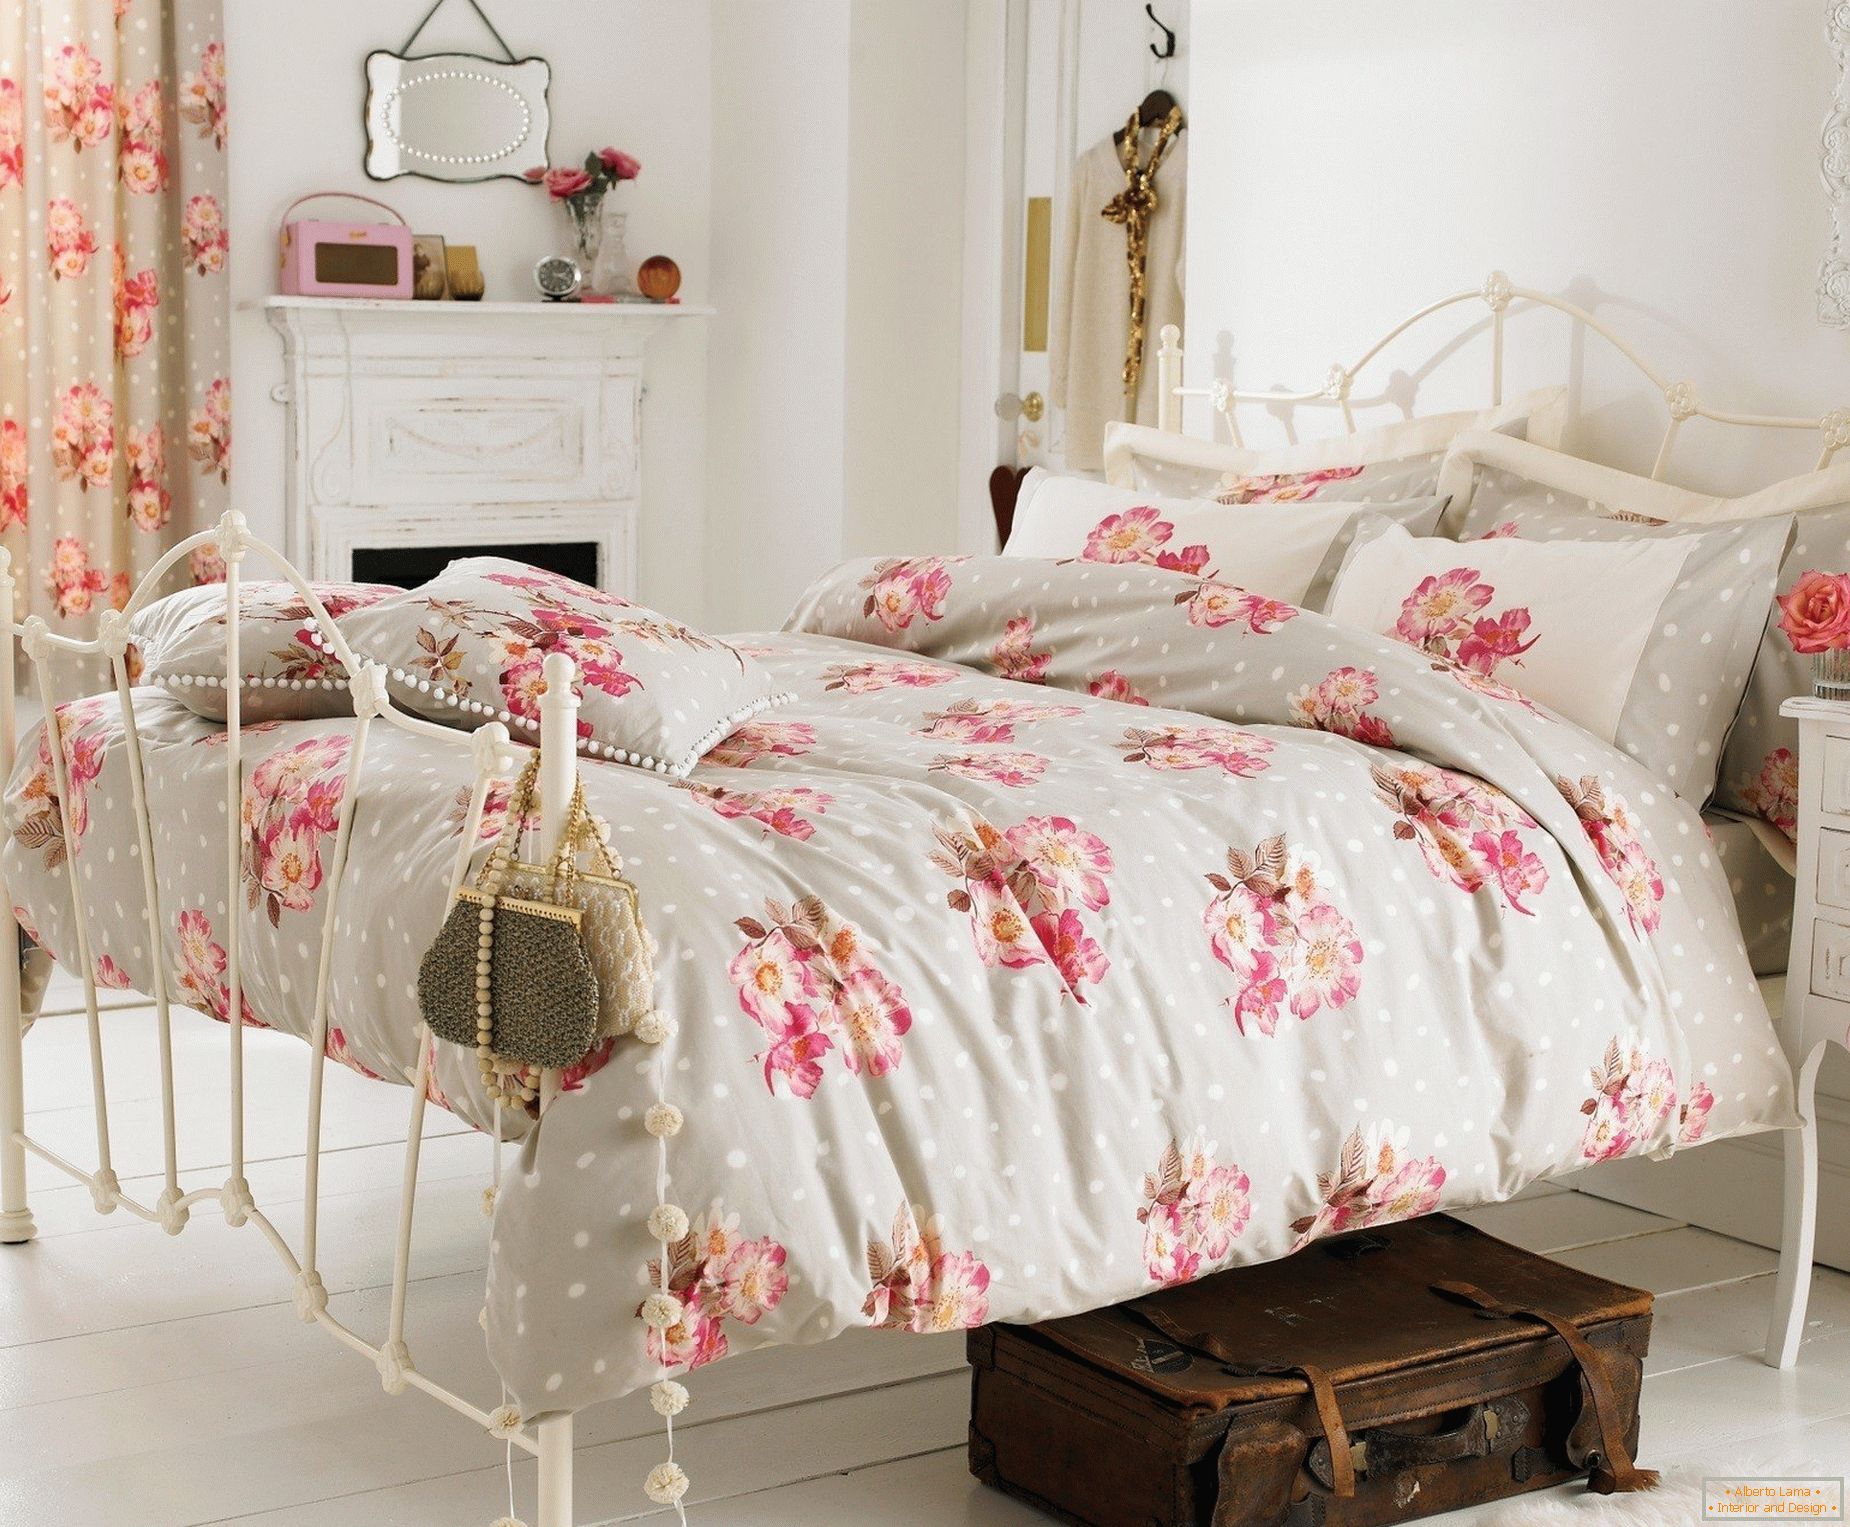 Camera da letto in stile provenzale